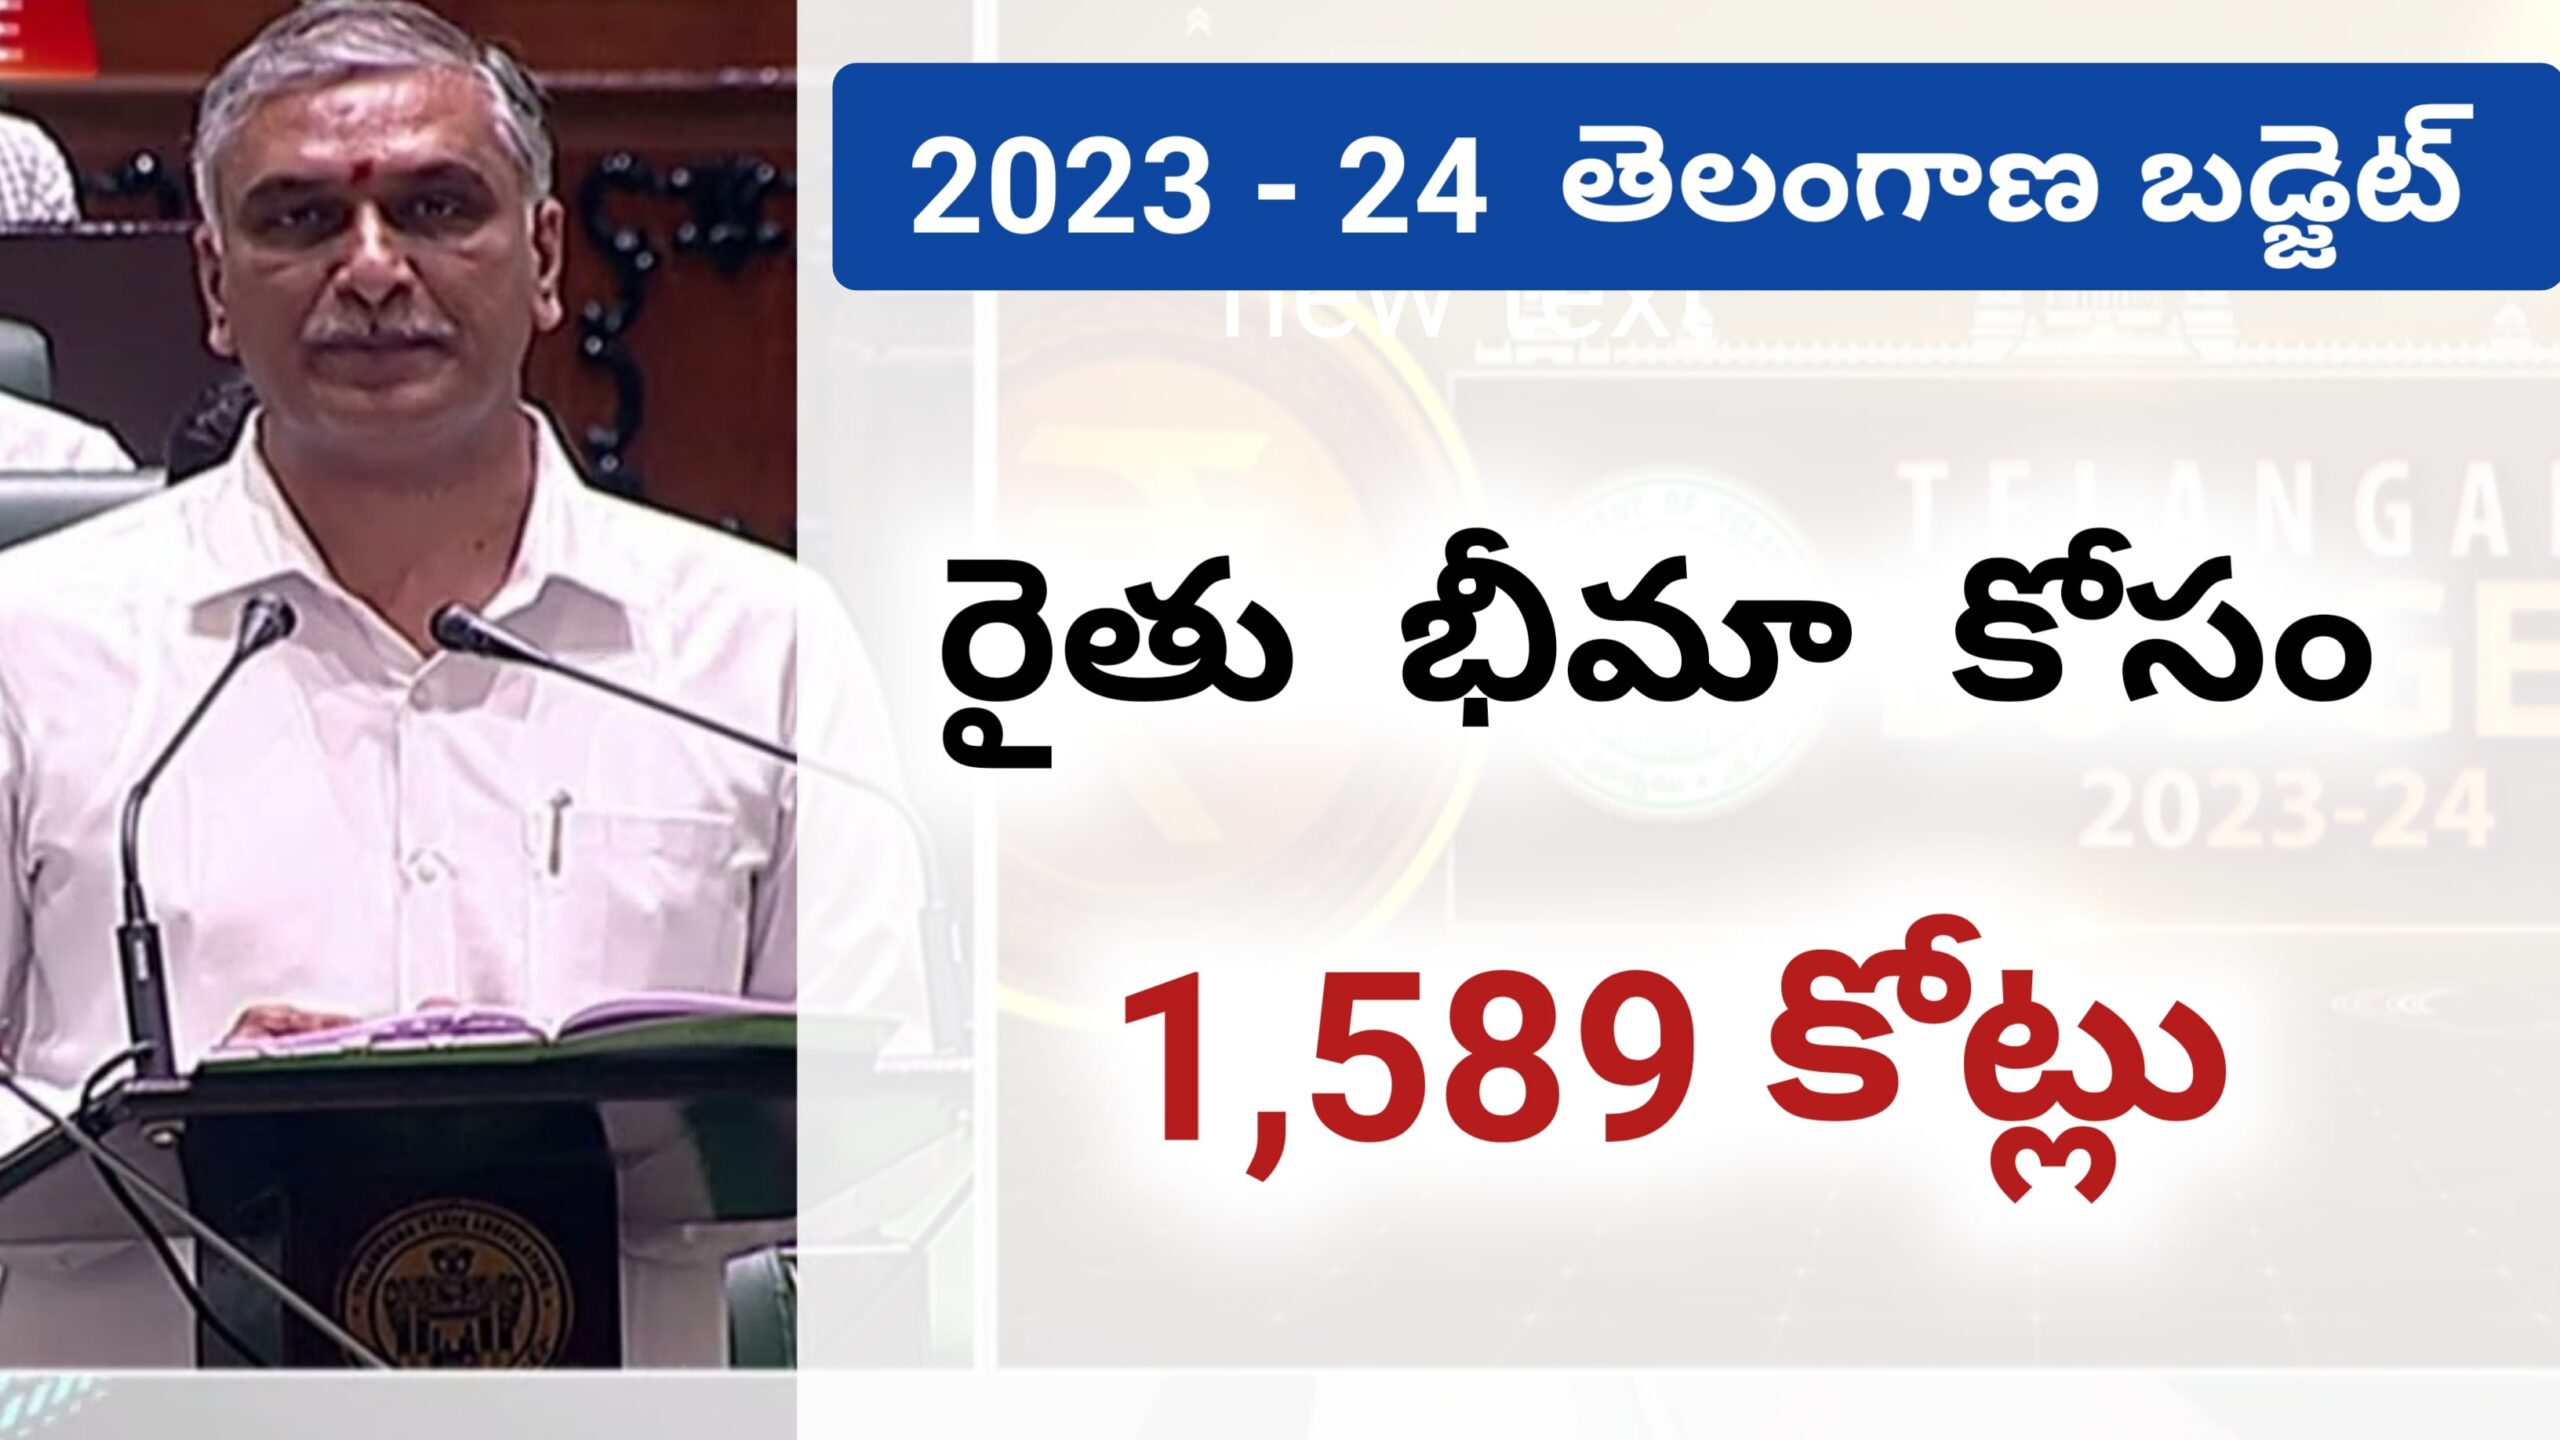 Ts agriculture Budget 2023 రైతు రుణమాఫీకి రూ 6,385 కోట్లు